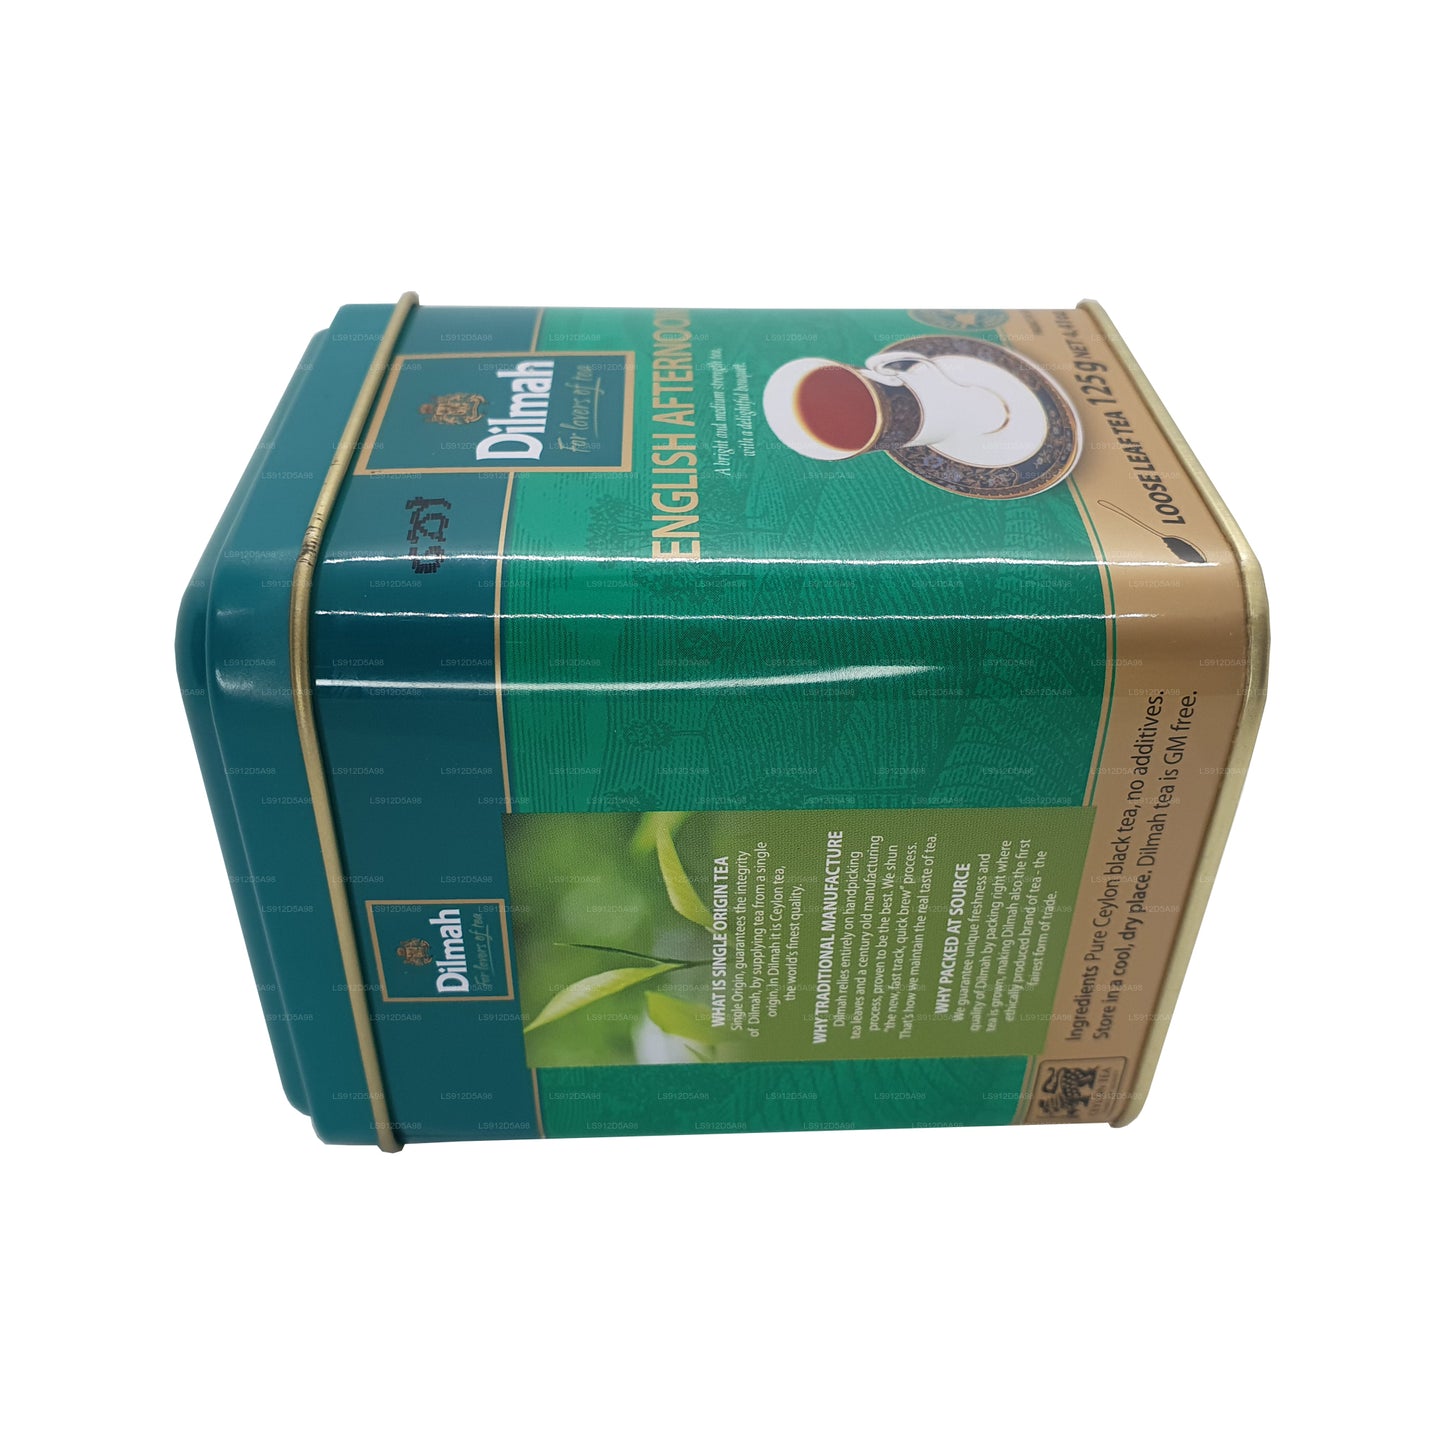 Dilmah angielska popołudniowa luźna herbata liściasta (125g)